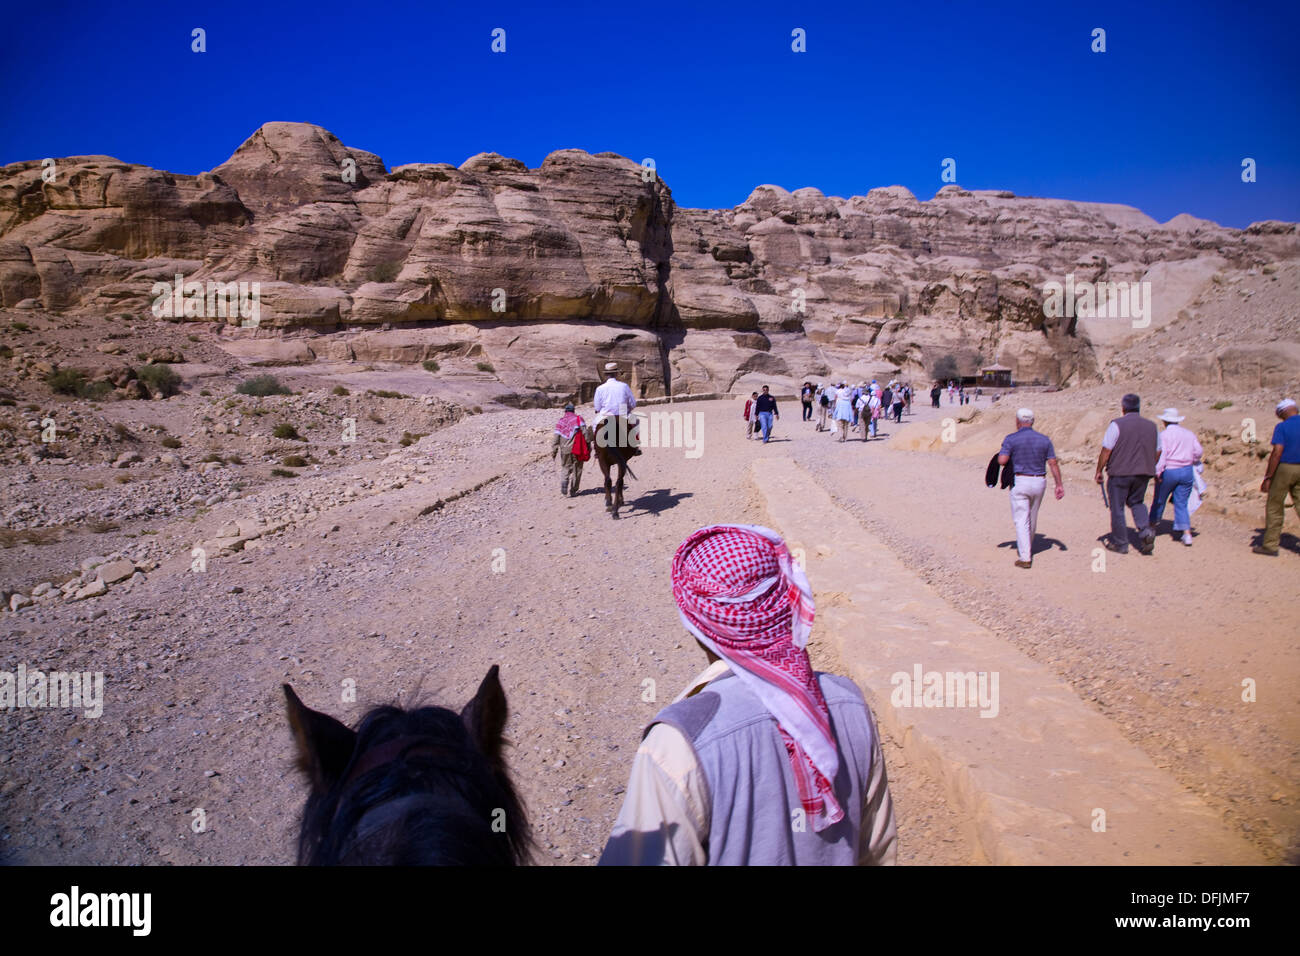 Trek to petra jordan hi-res stock photography and images - Alamy